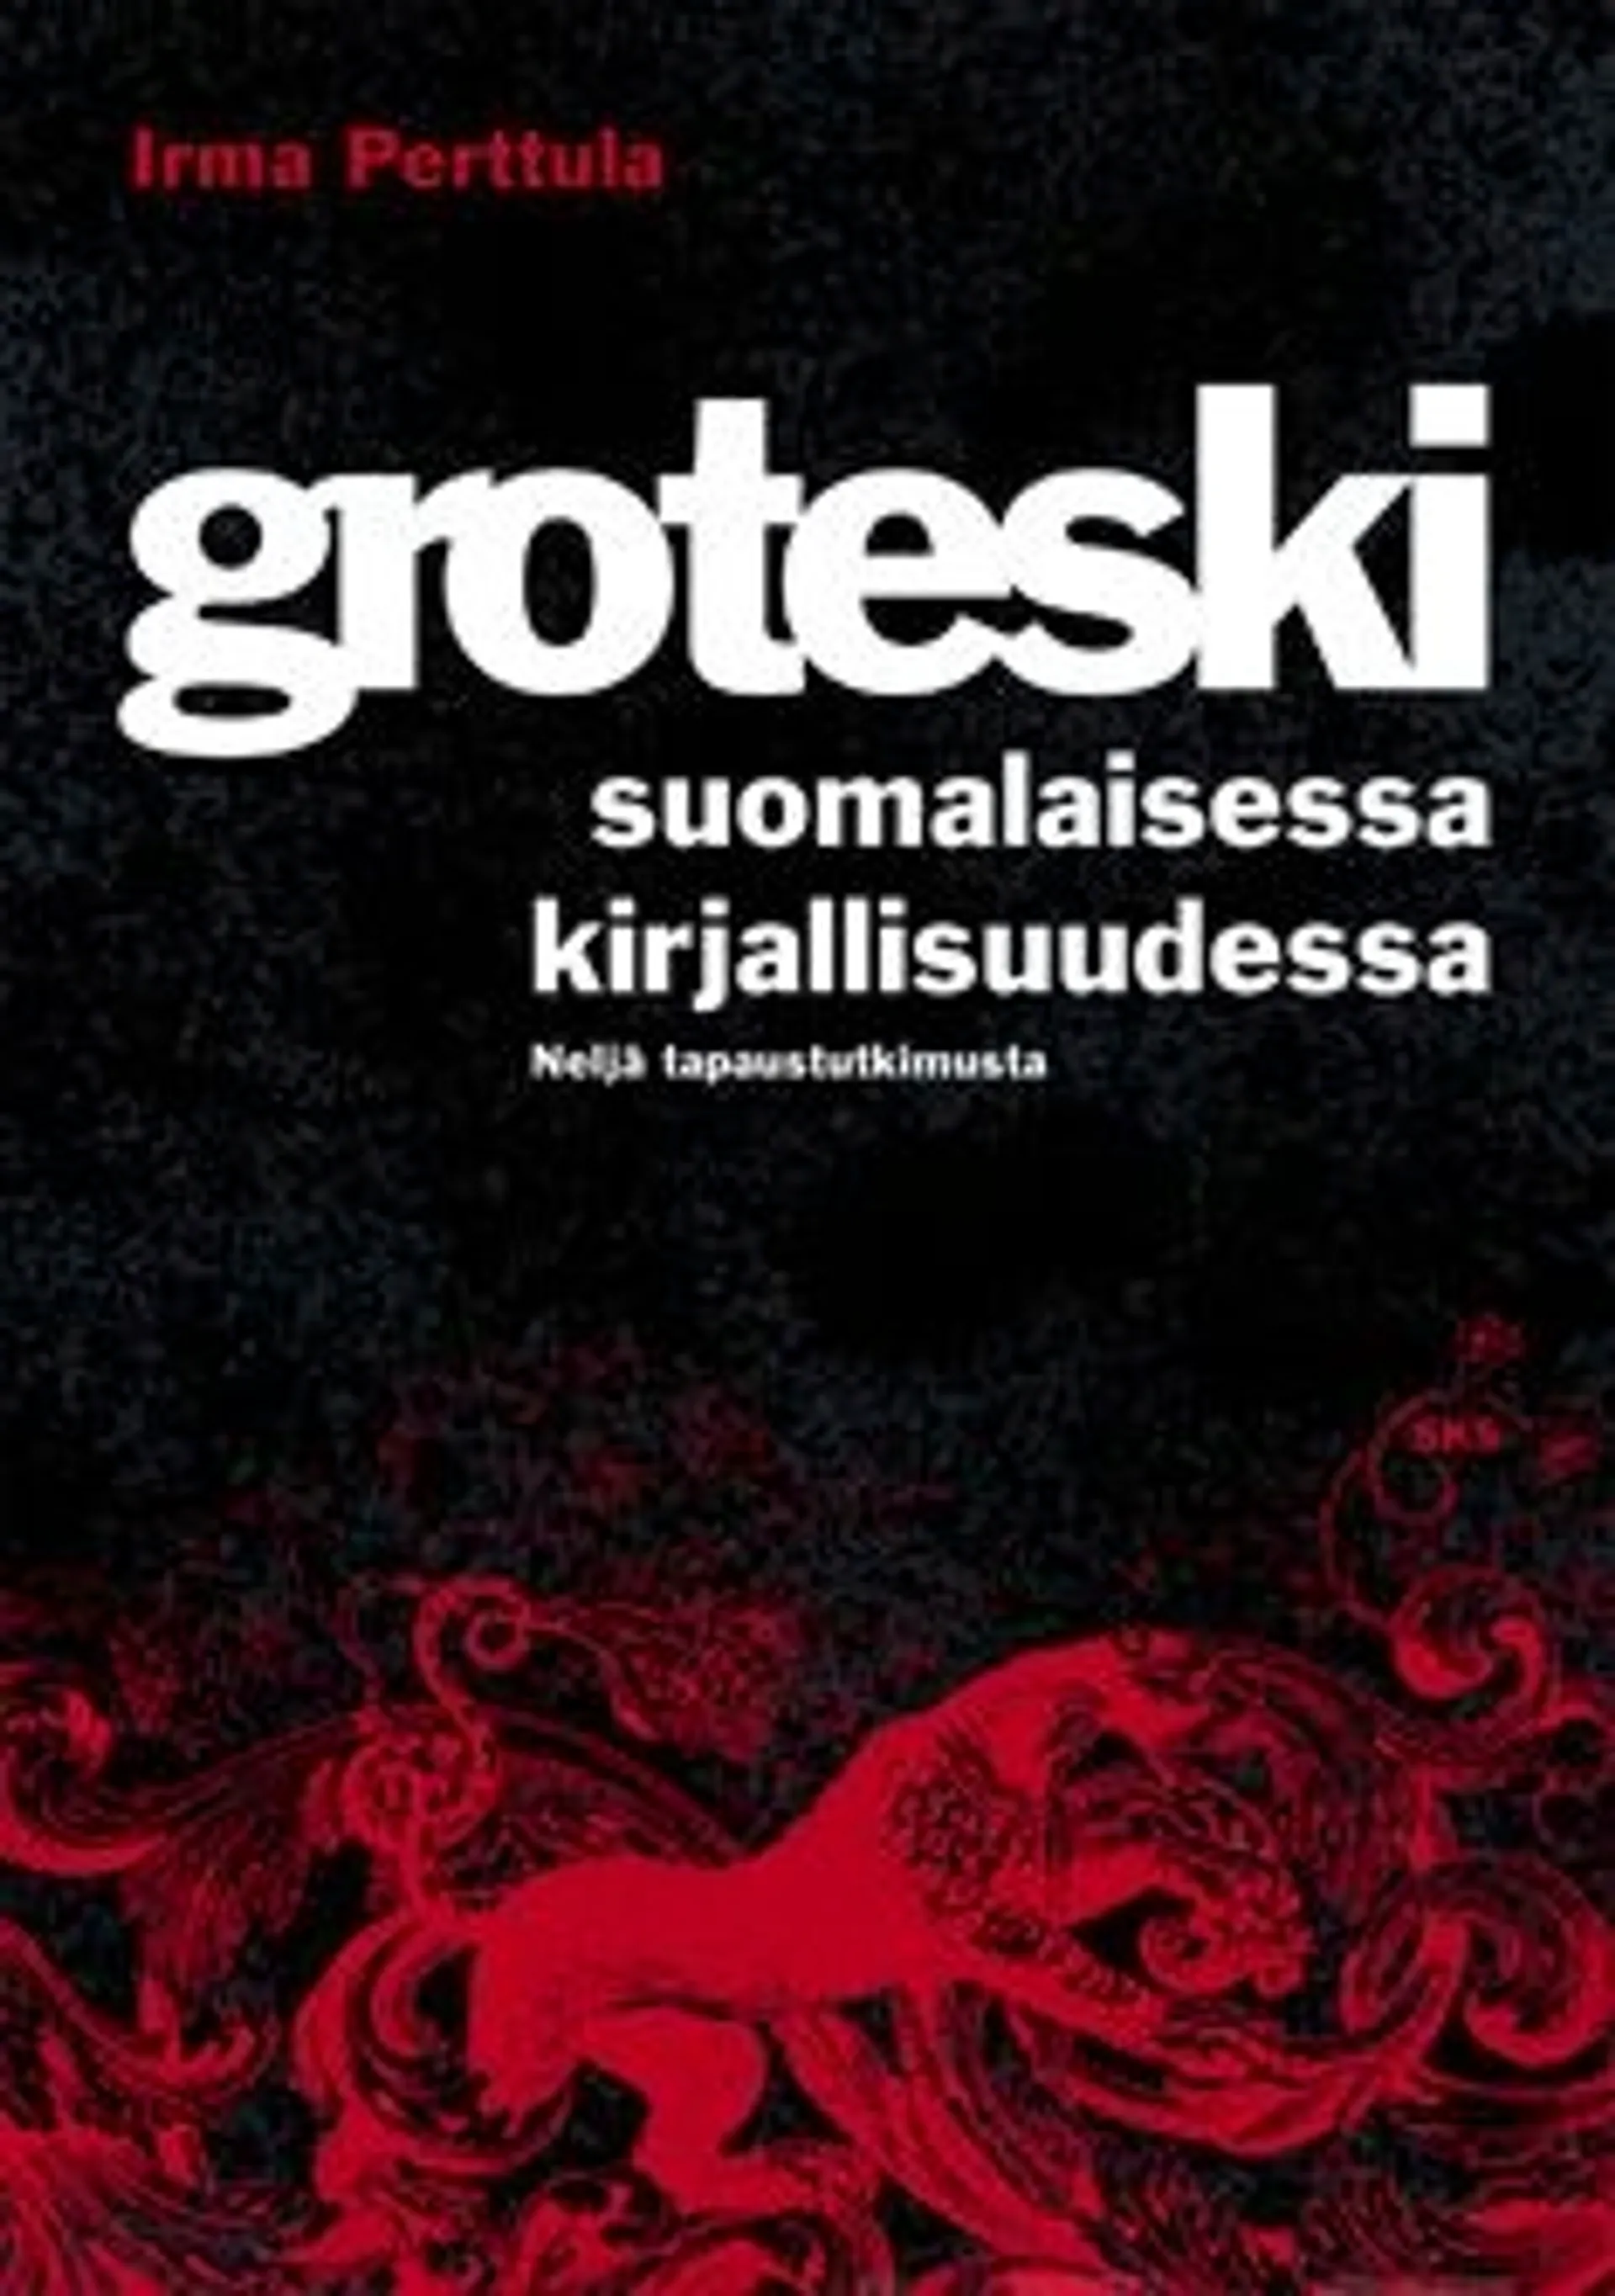 Perttula, Groteski suomalaisessa kirjallisuudessa